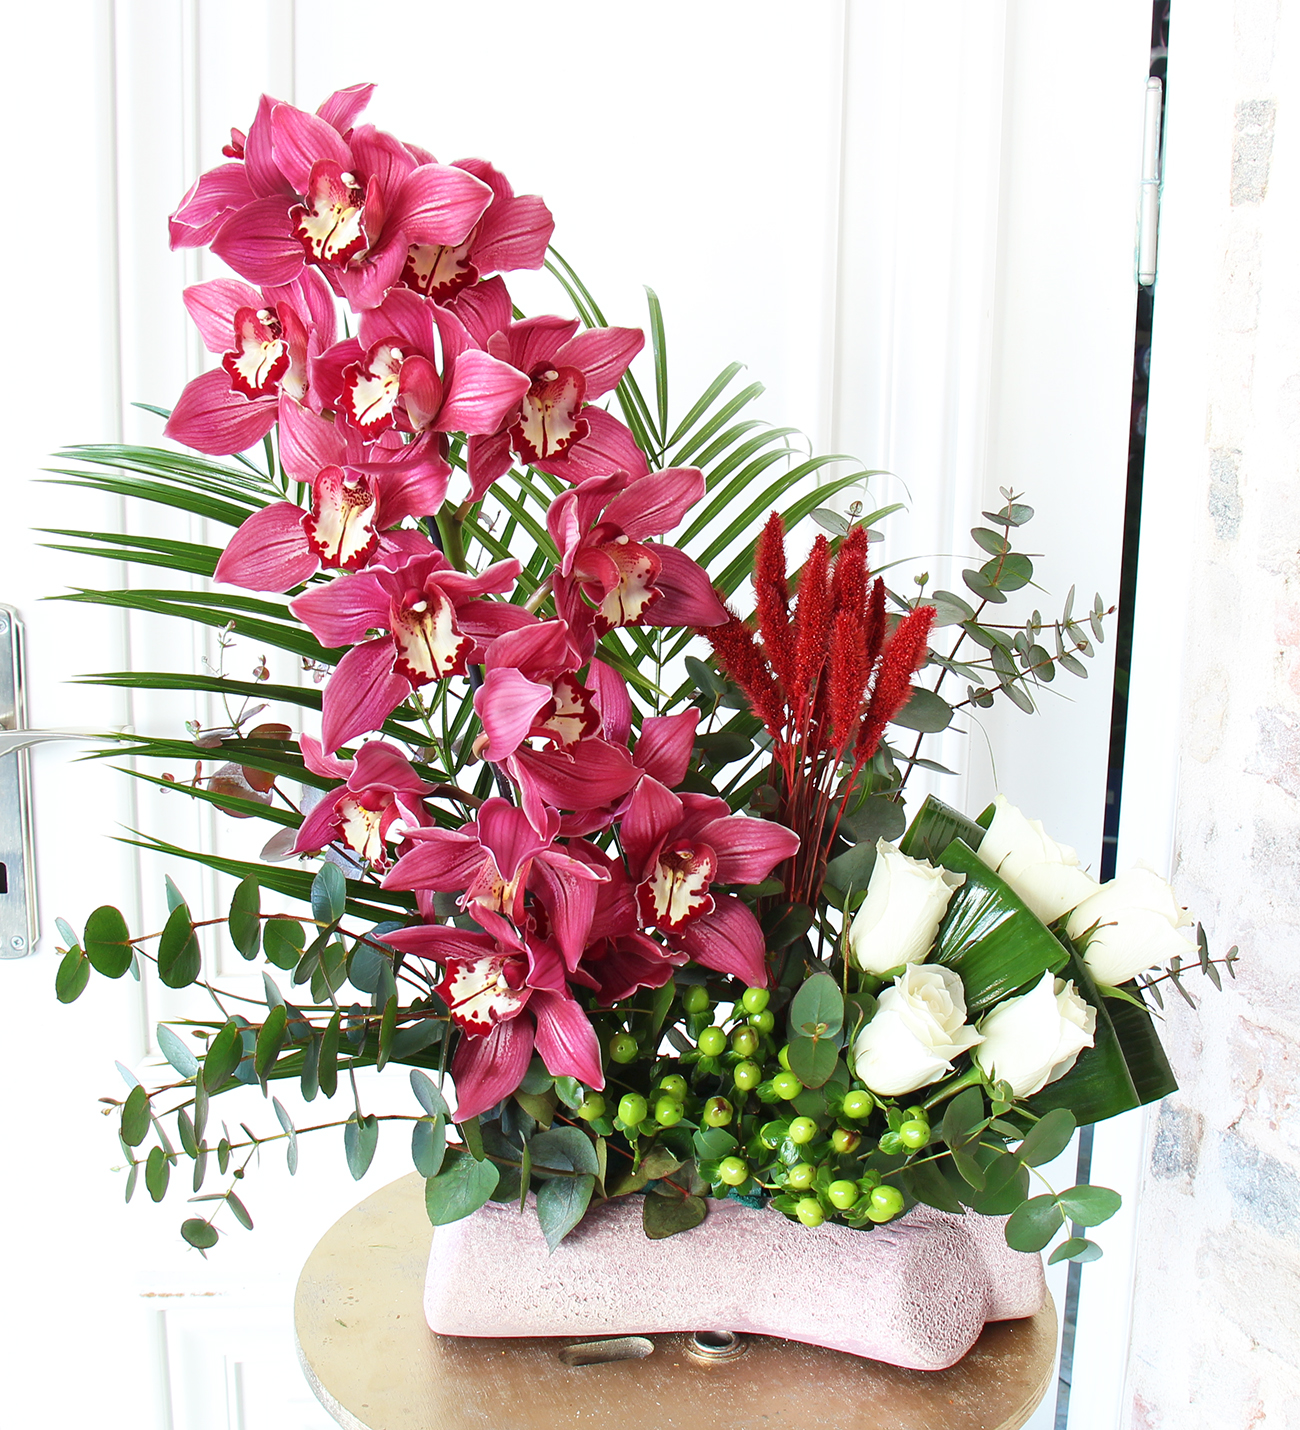 Matila pembe simbidyum orkide beyaz güller aranjmanı